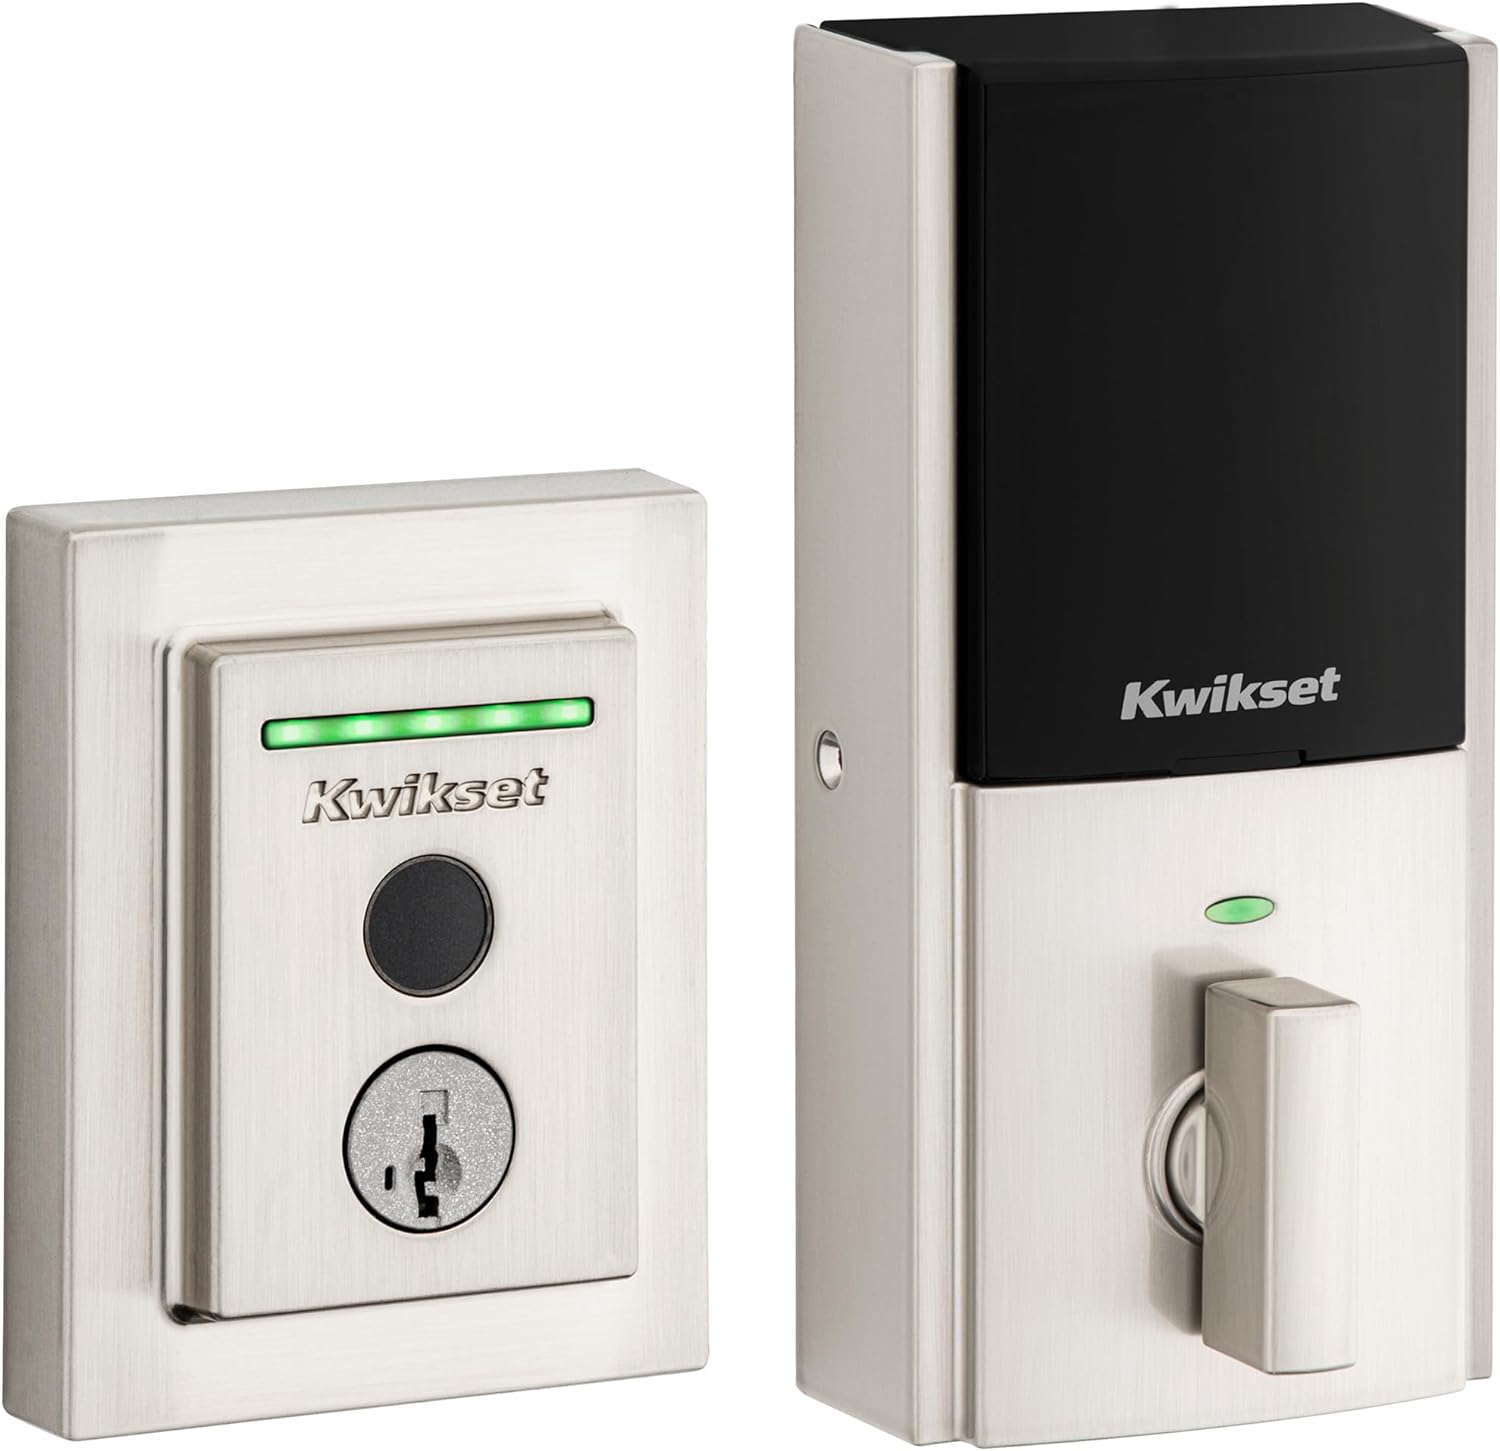 Kwikset Halo Fingerprint Wi-Fi Smart Door Lock, Keyless Touch Entry - $120